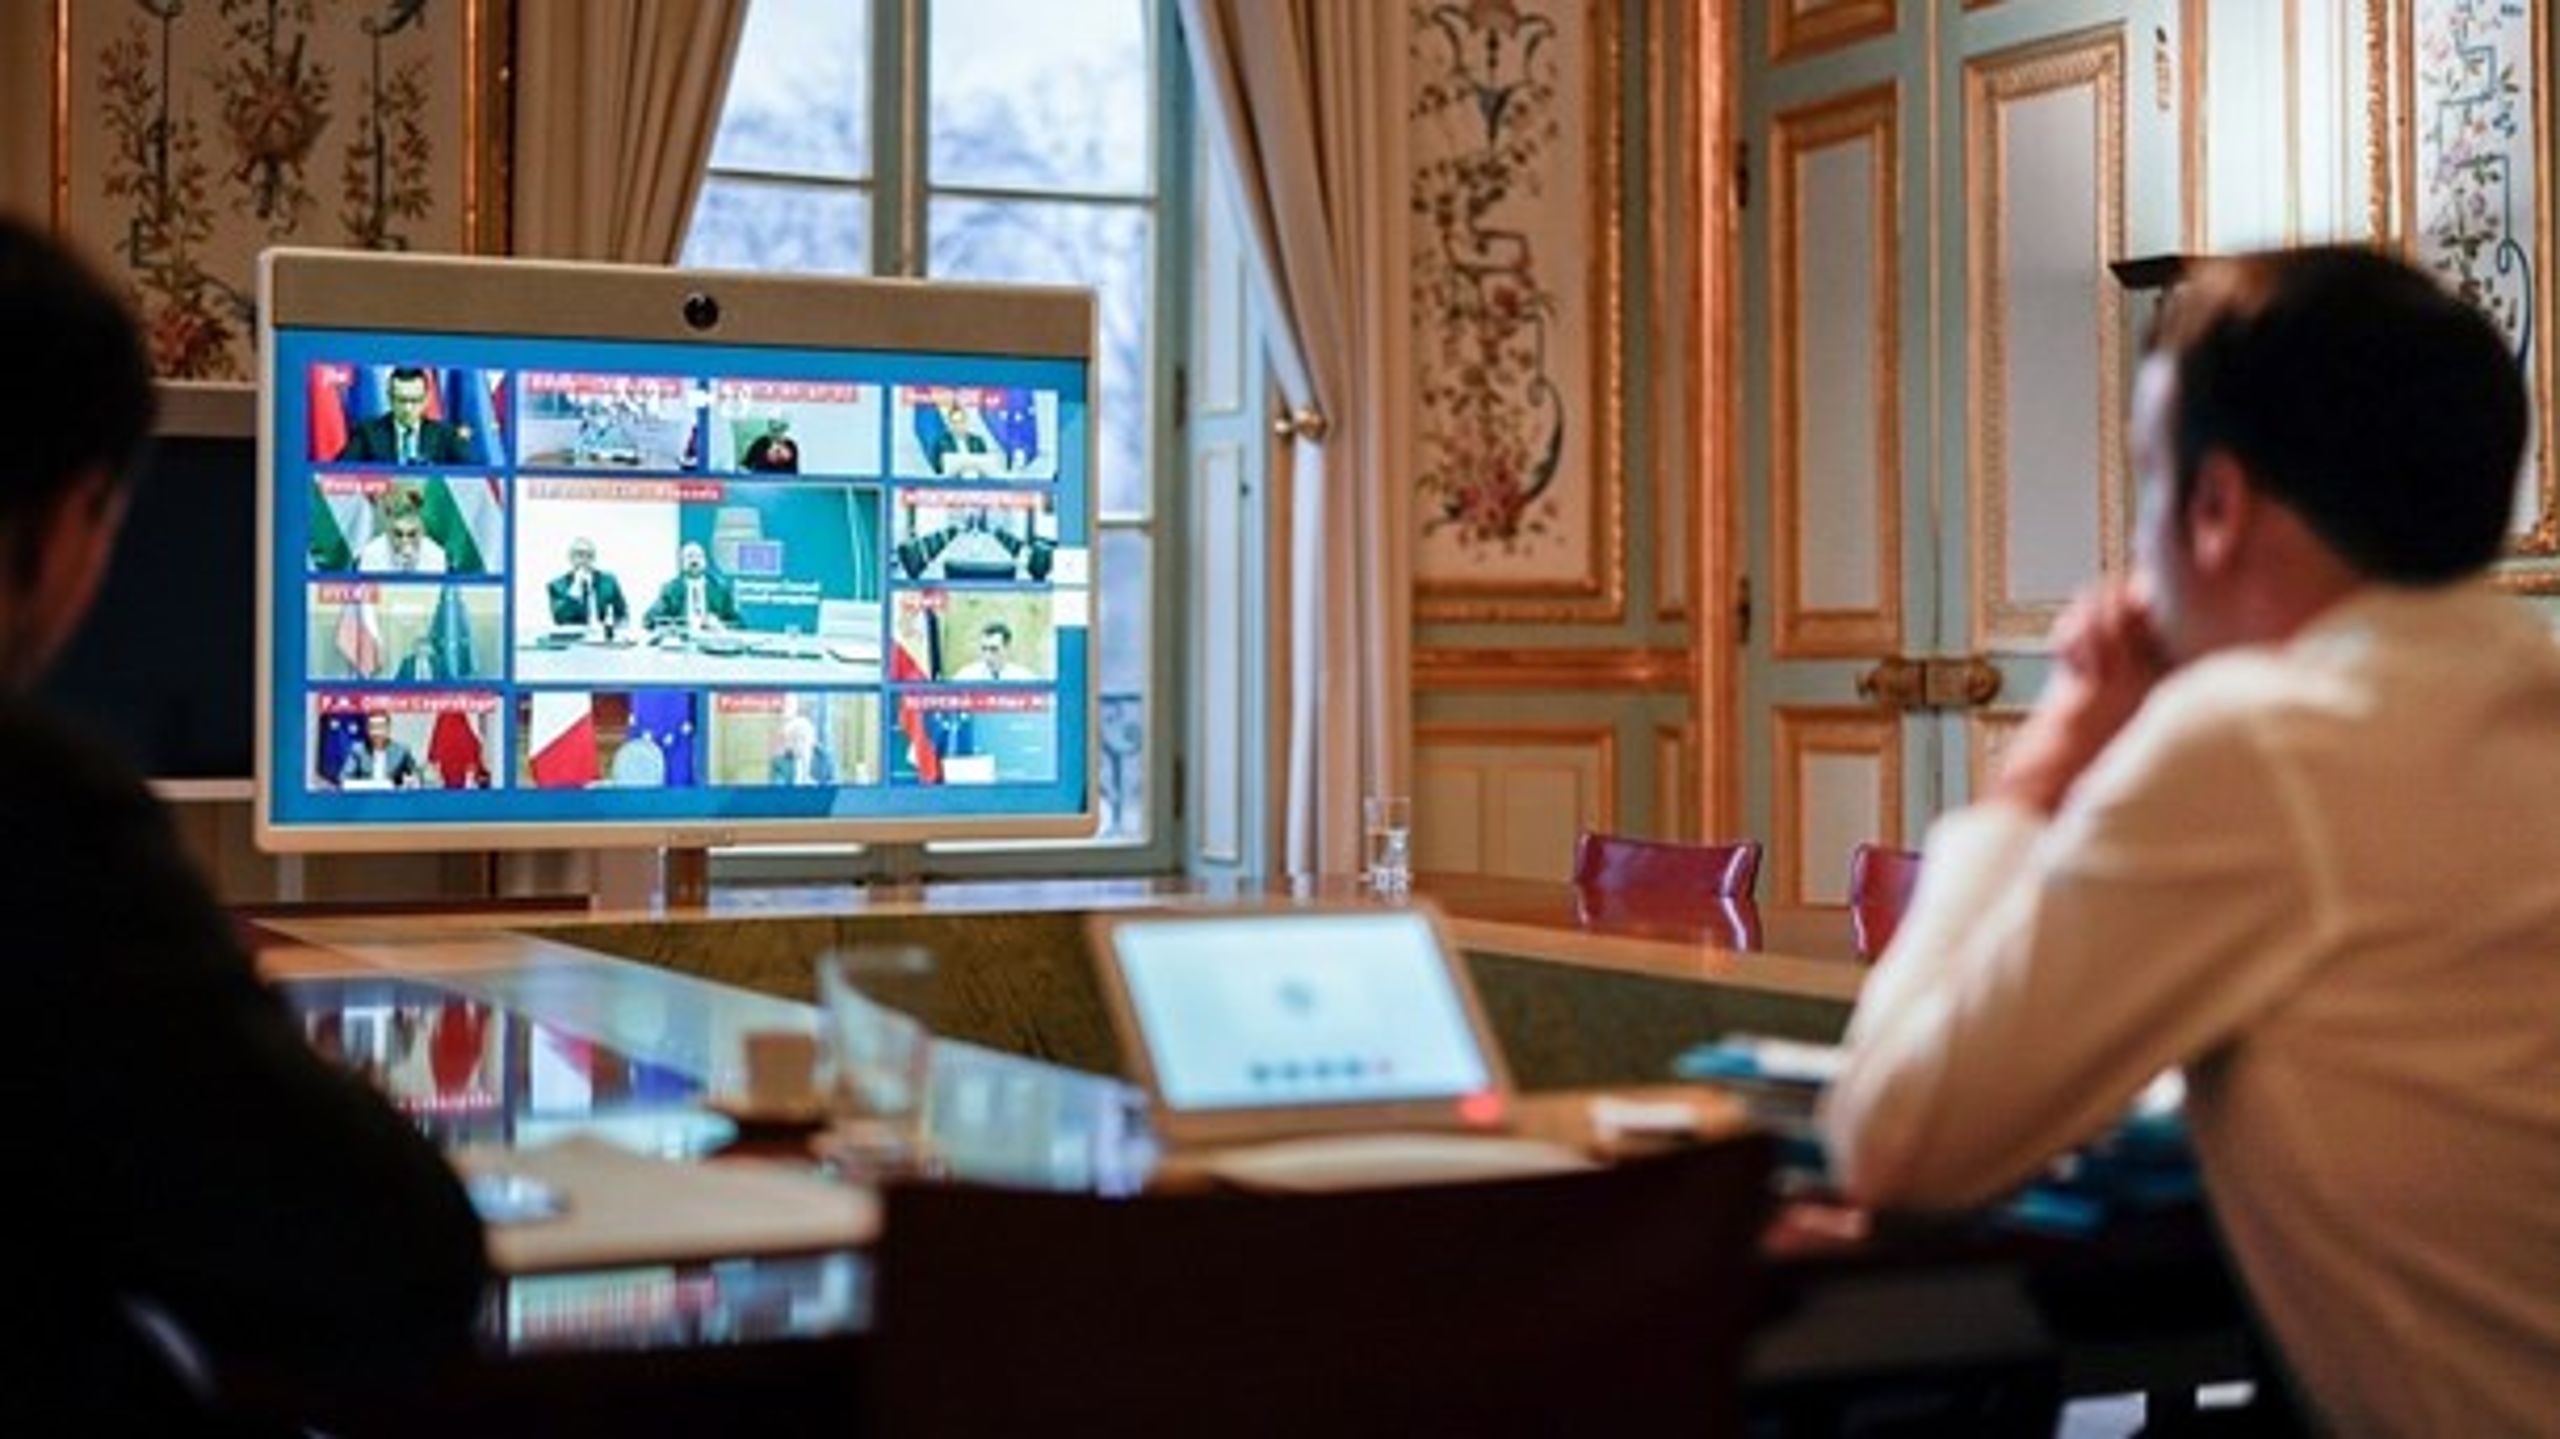 Kriser skaber nytænkning: Tirsdag holdt EU's ledere topmøde over videolink, her set fra præsident Macron i Paris. Statsminister Mette Frederiksen (S) ses nederst til venstre på skærmen.&nbsp;